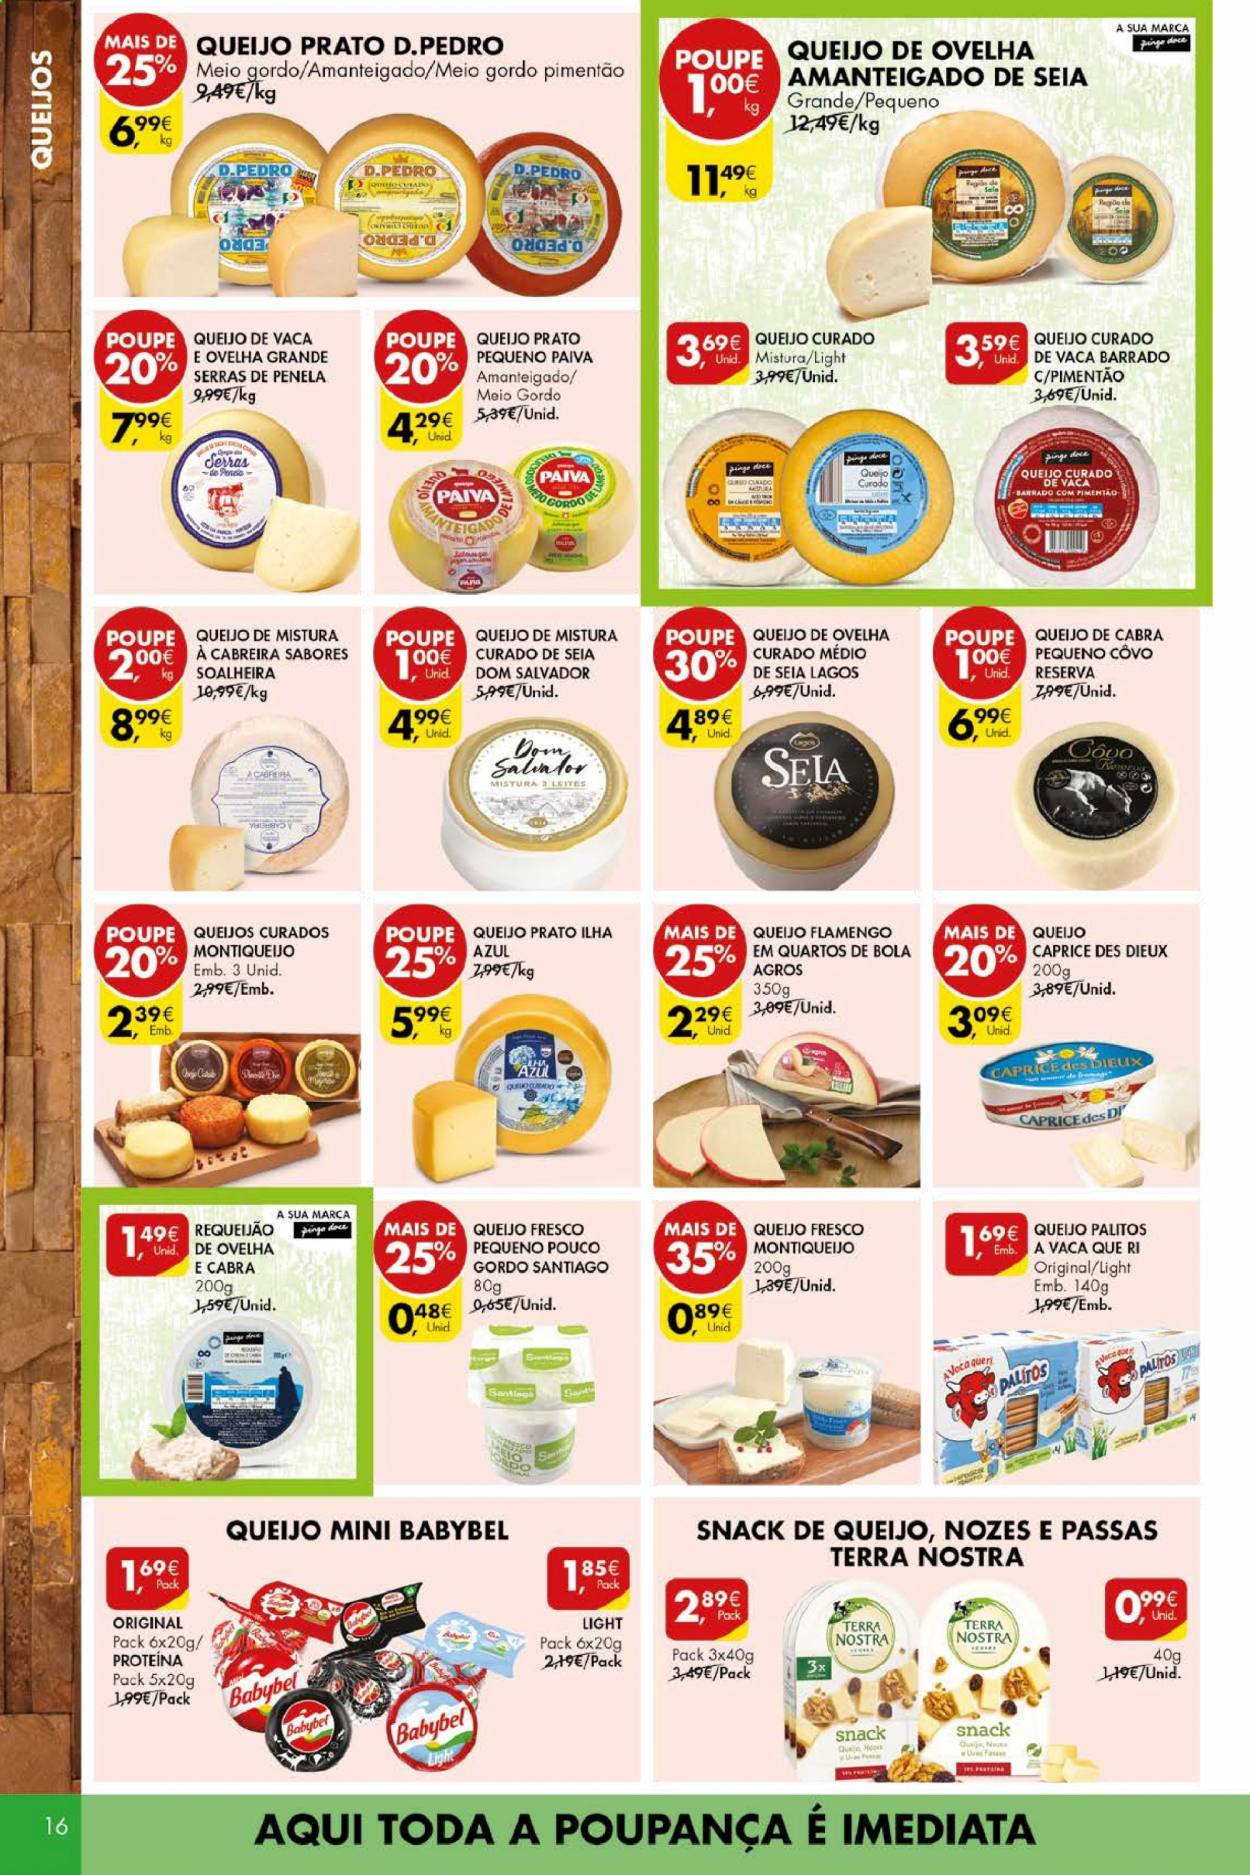 thumbnail - Folheto Pingo Doce - 11.5.2021 - 17.5.2021 - Produtos em promoção - requeijão, Babybel, queijo prato, nozes, prato. Página 16.